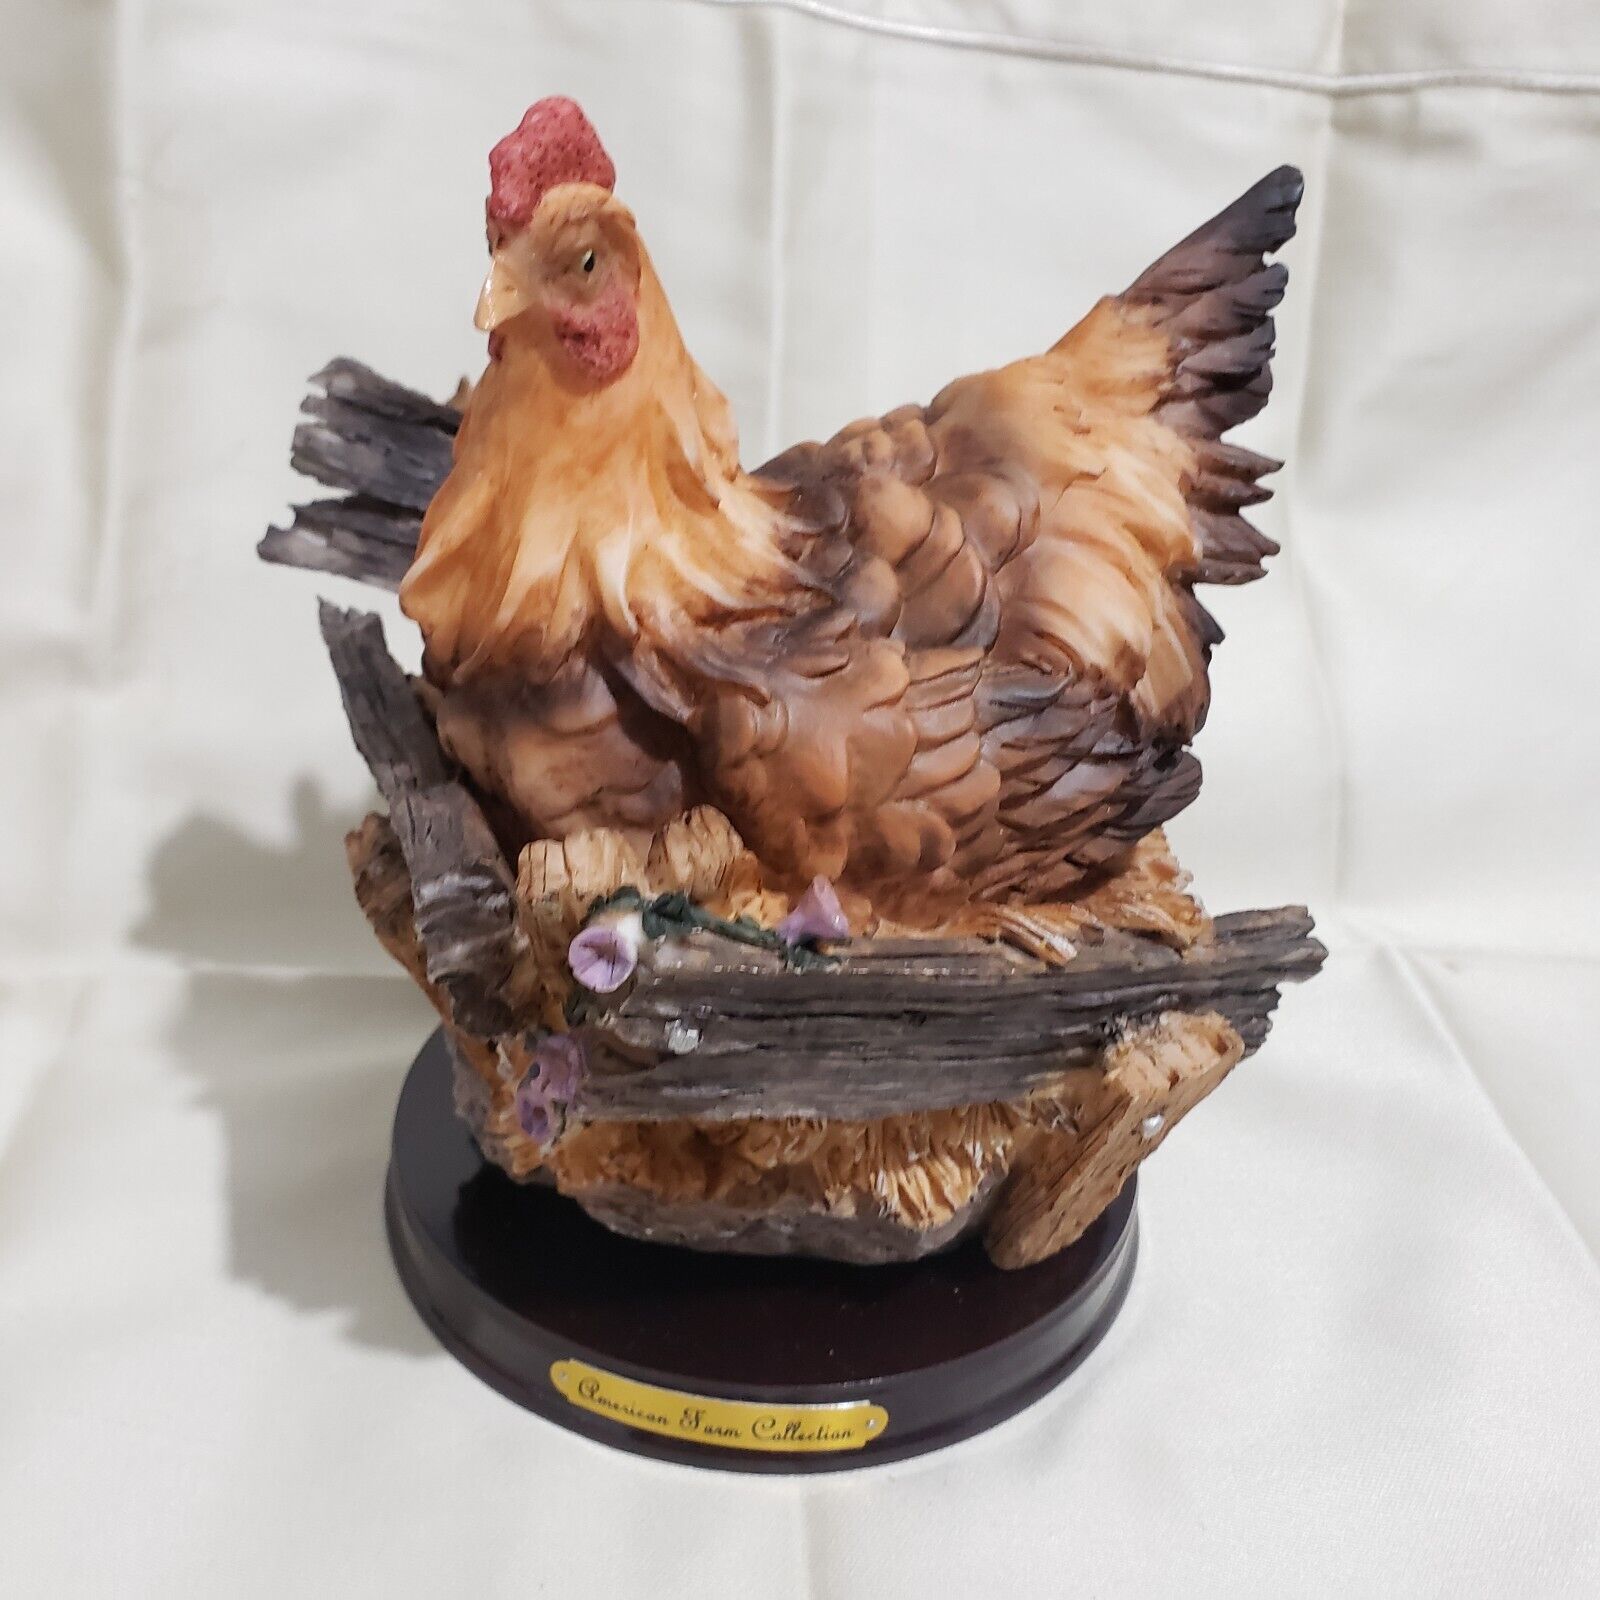 AMERICAN FARM COLLECTION Chicken Figurine Statue 7\